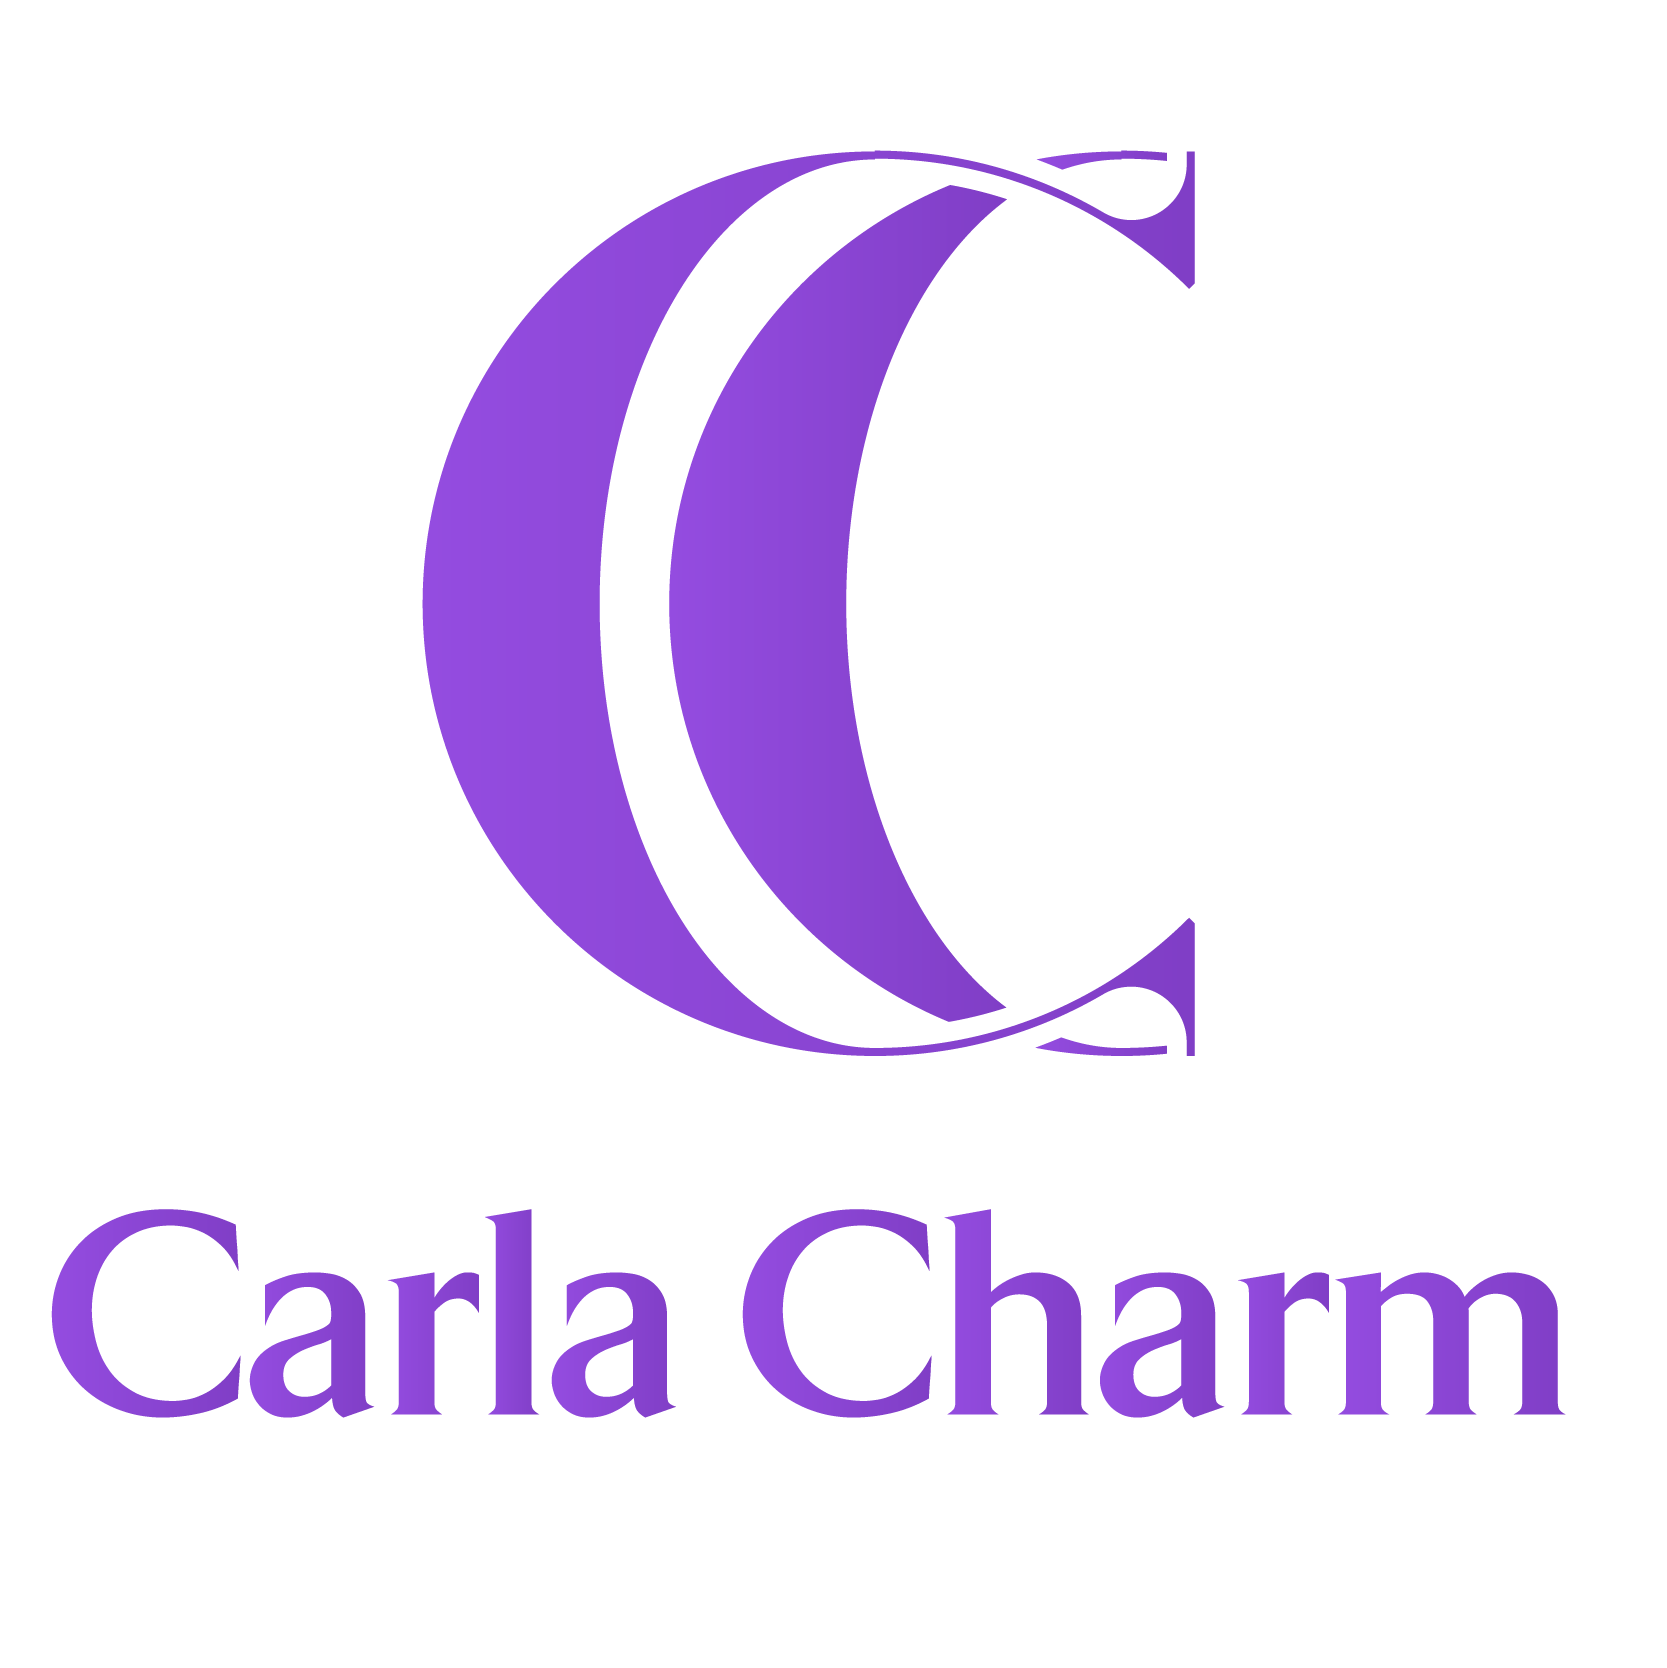 Carlacharm Reviews